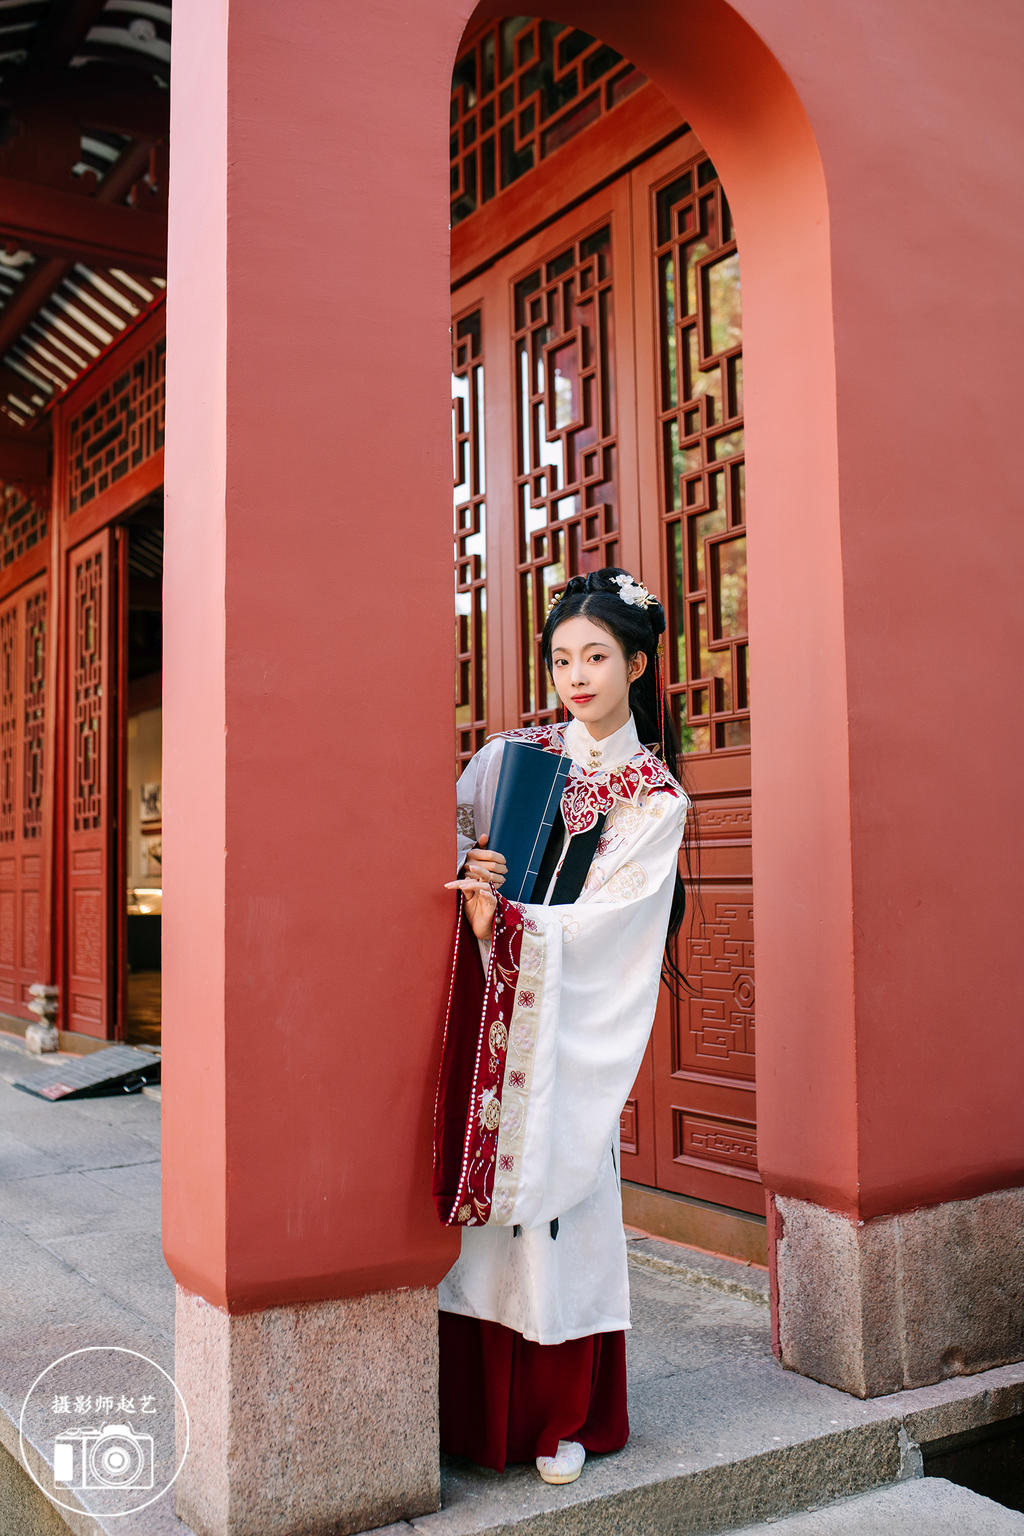 红墙下的古装美女明媚中国极品美軳图片